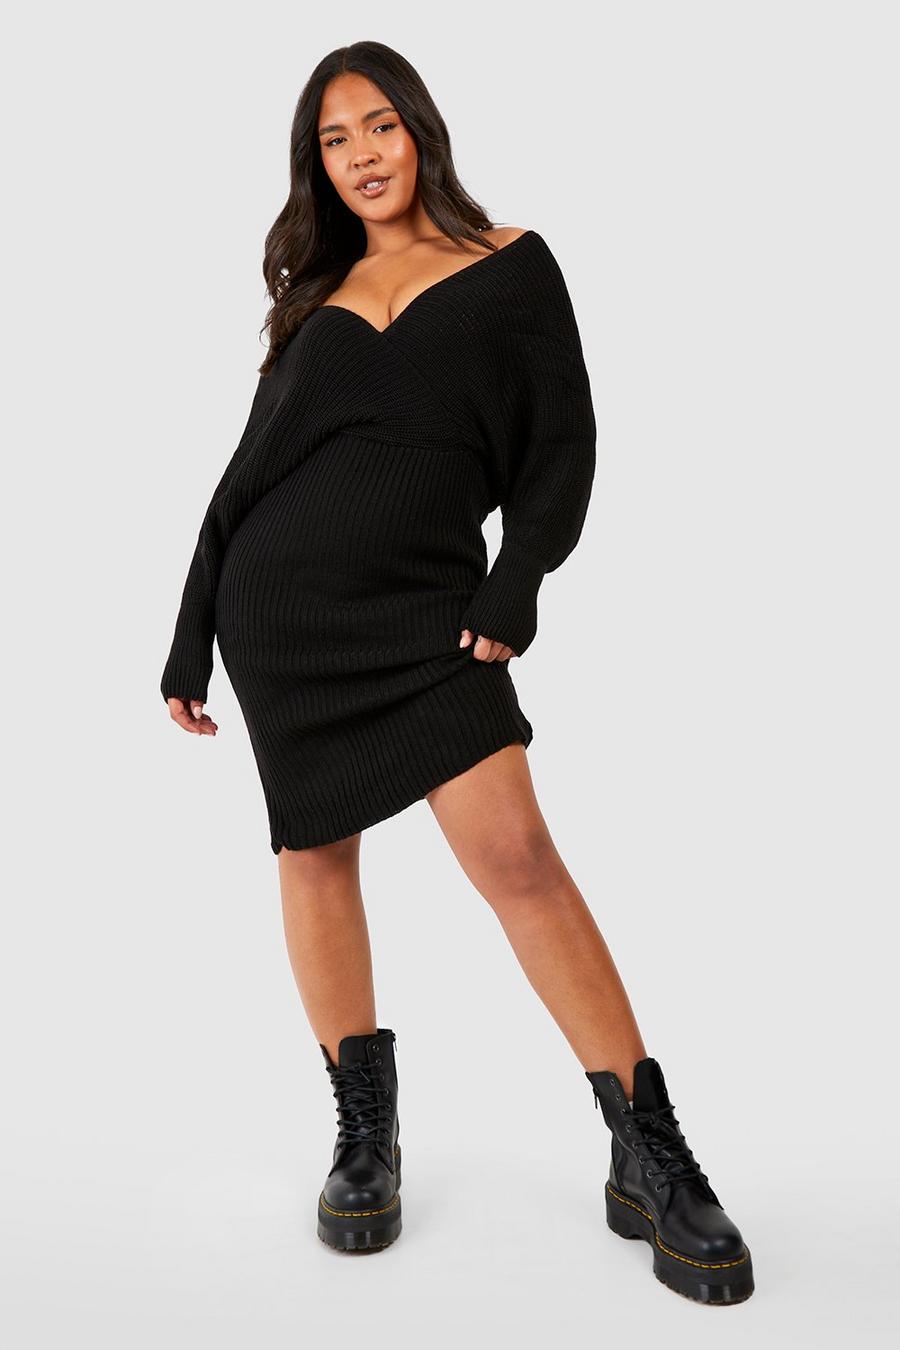 שחור black שמלת סוודר בסריגת ריב עם כתפיים חשופות, מידות גדולות